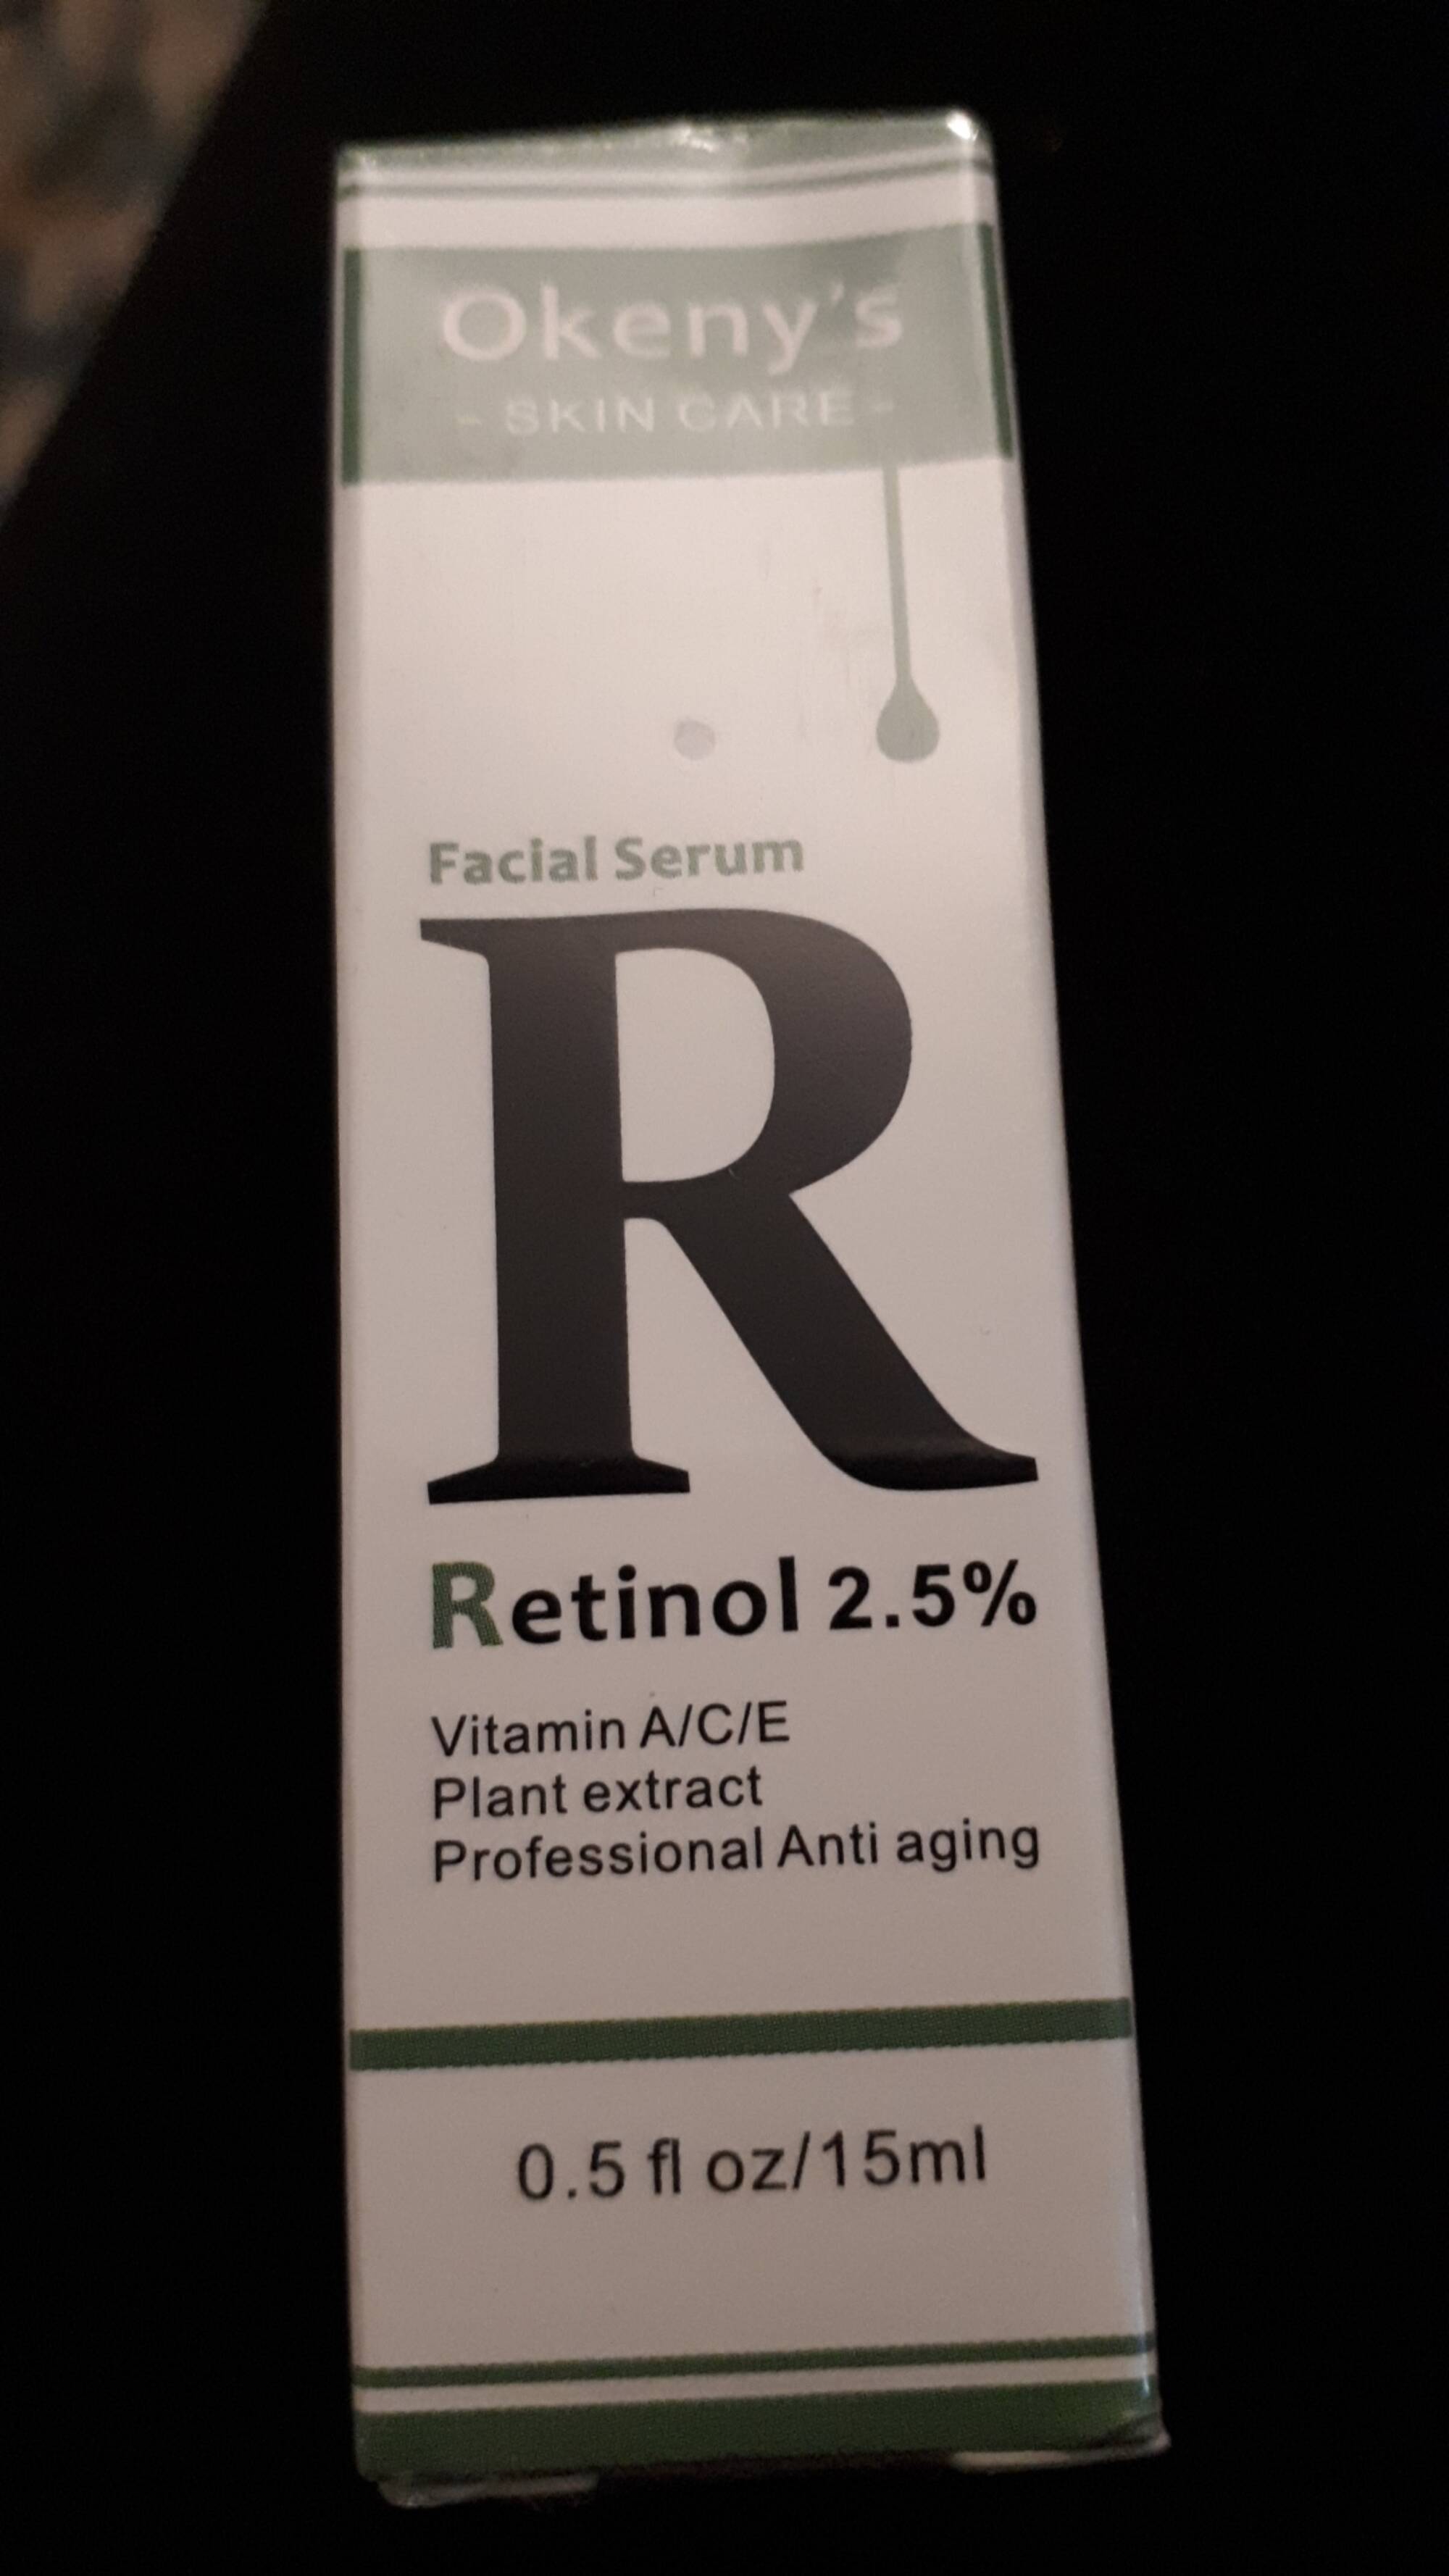 OKENY'S - Retinol 2.5% - Facial serum